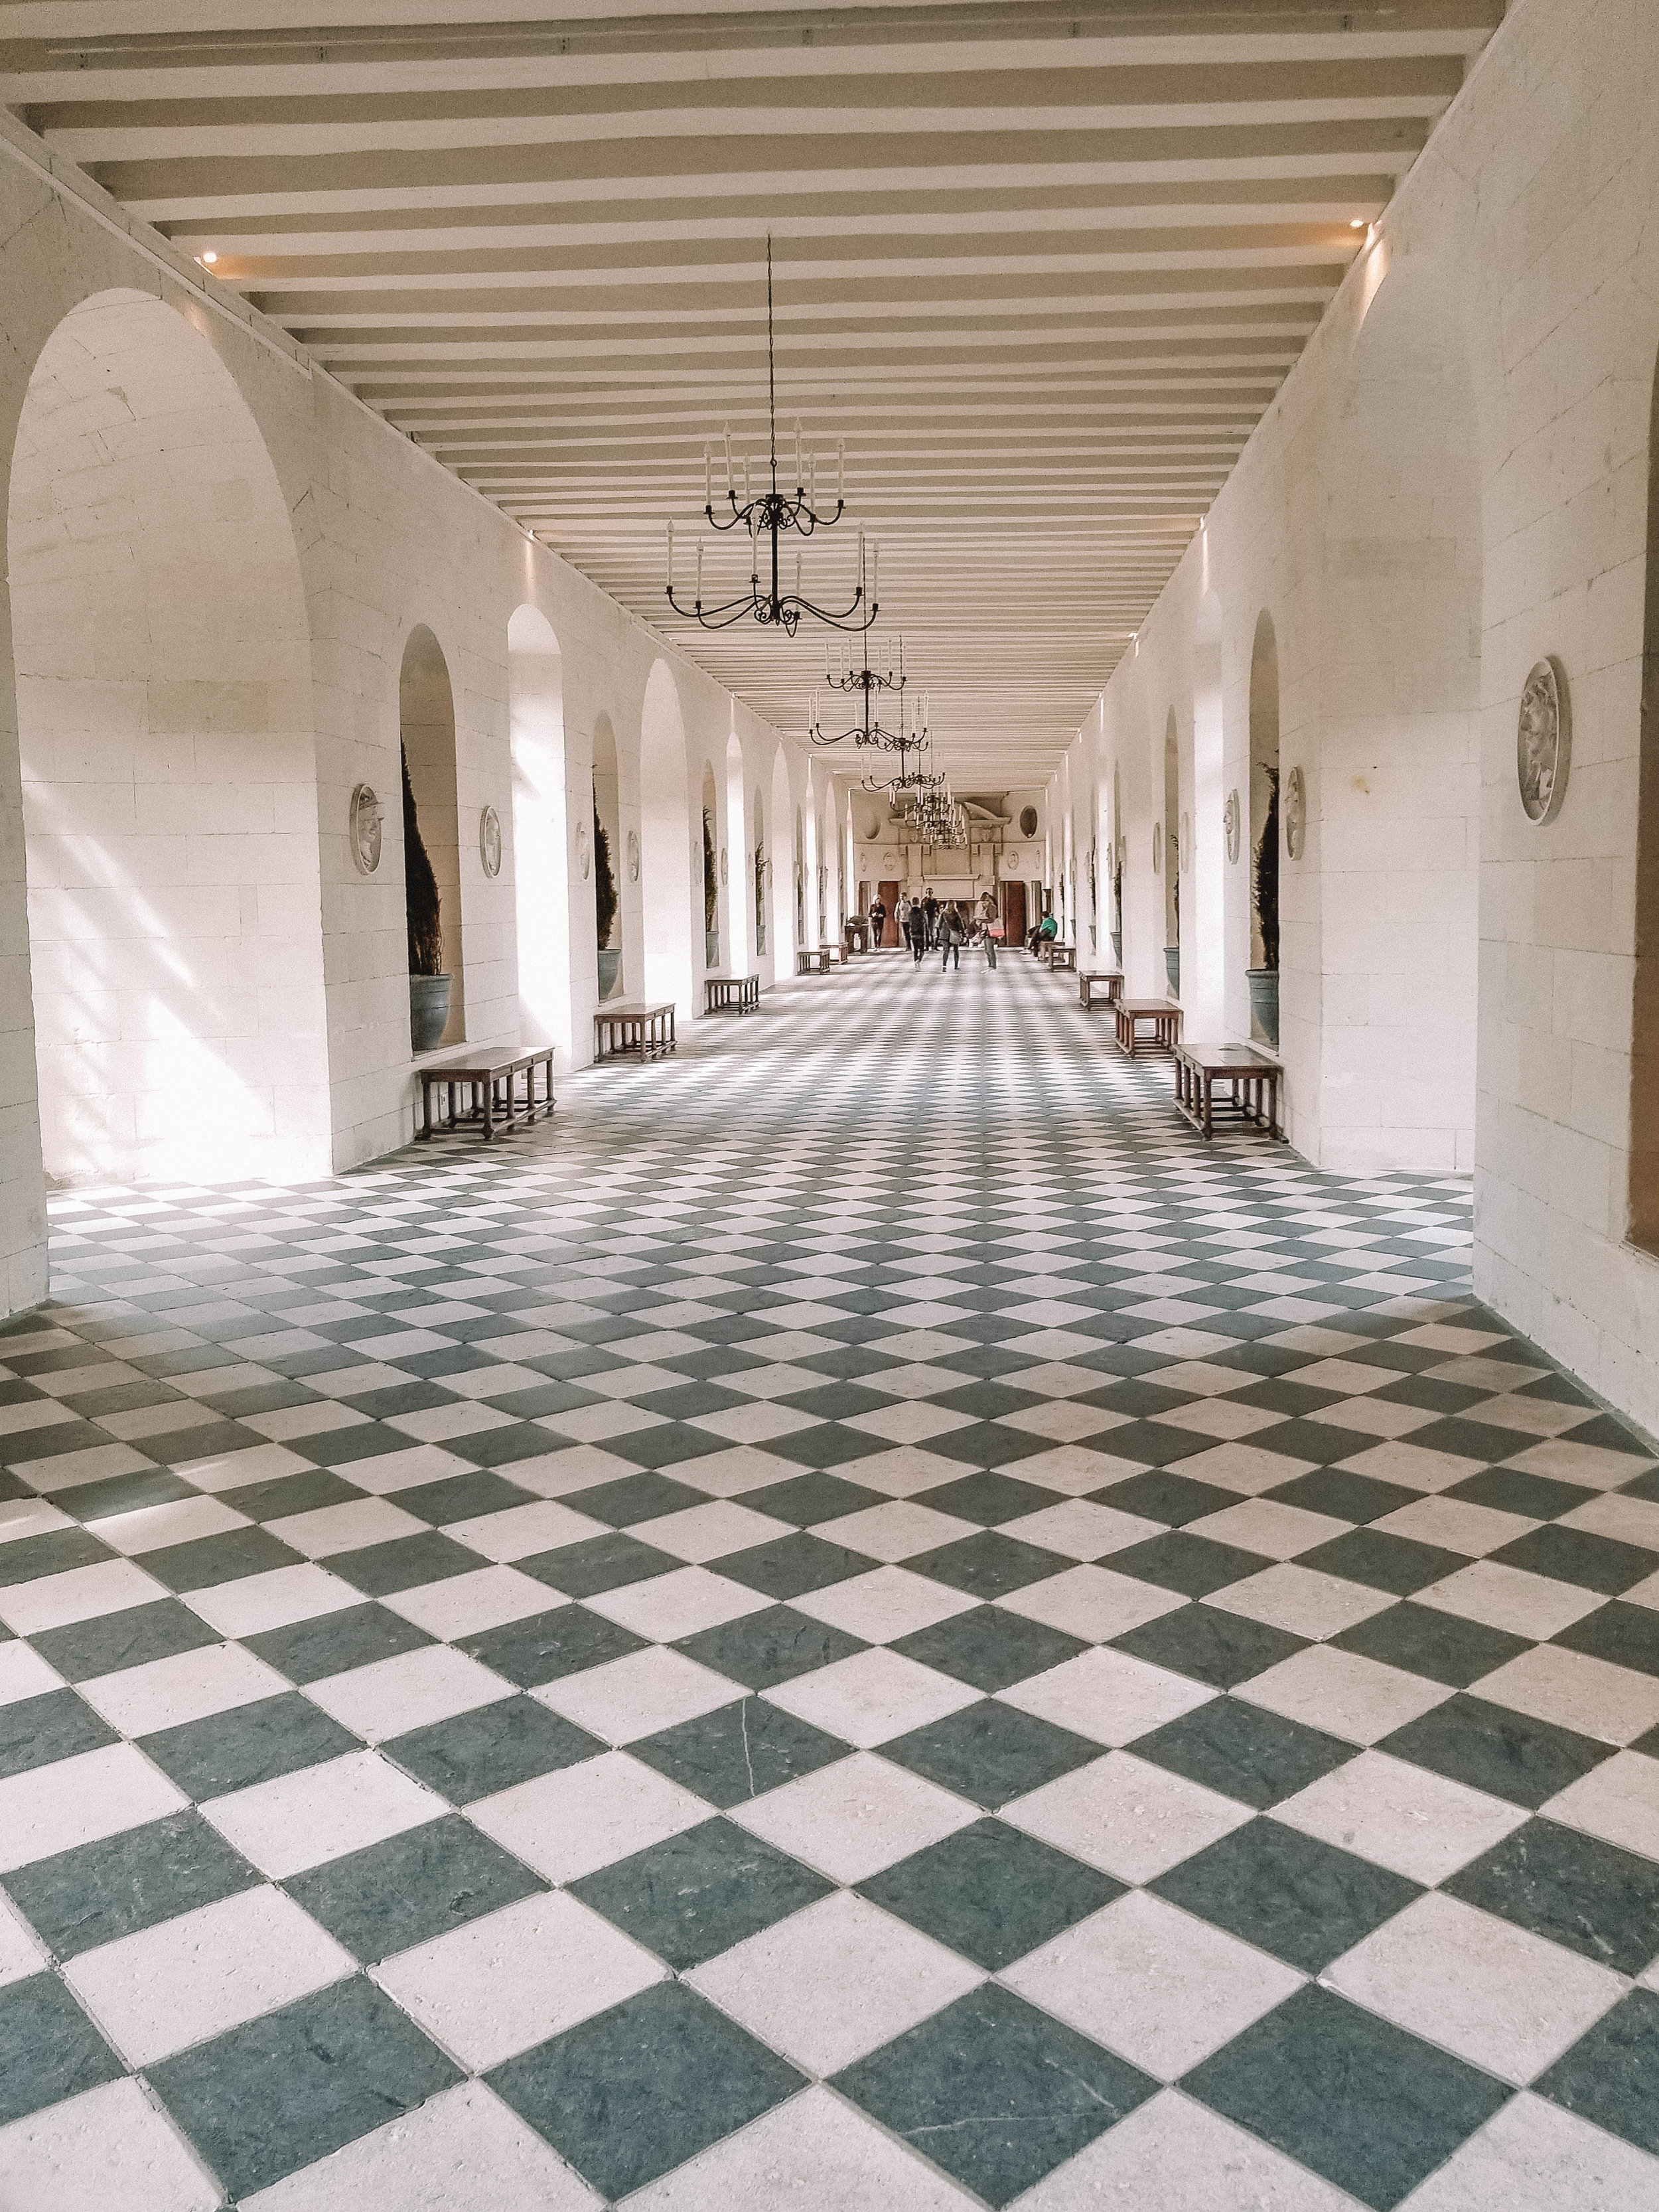 Tiled Floor - Chateau de Chenonceau - Loire Valley - France